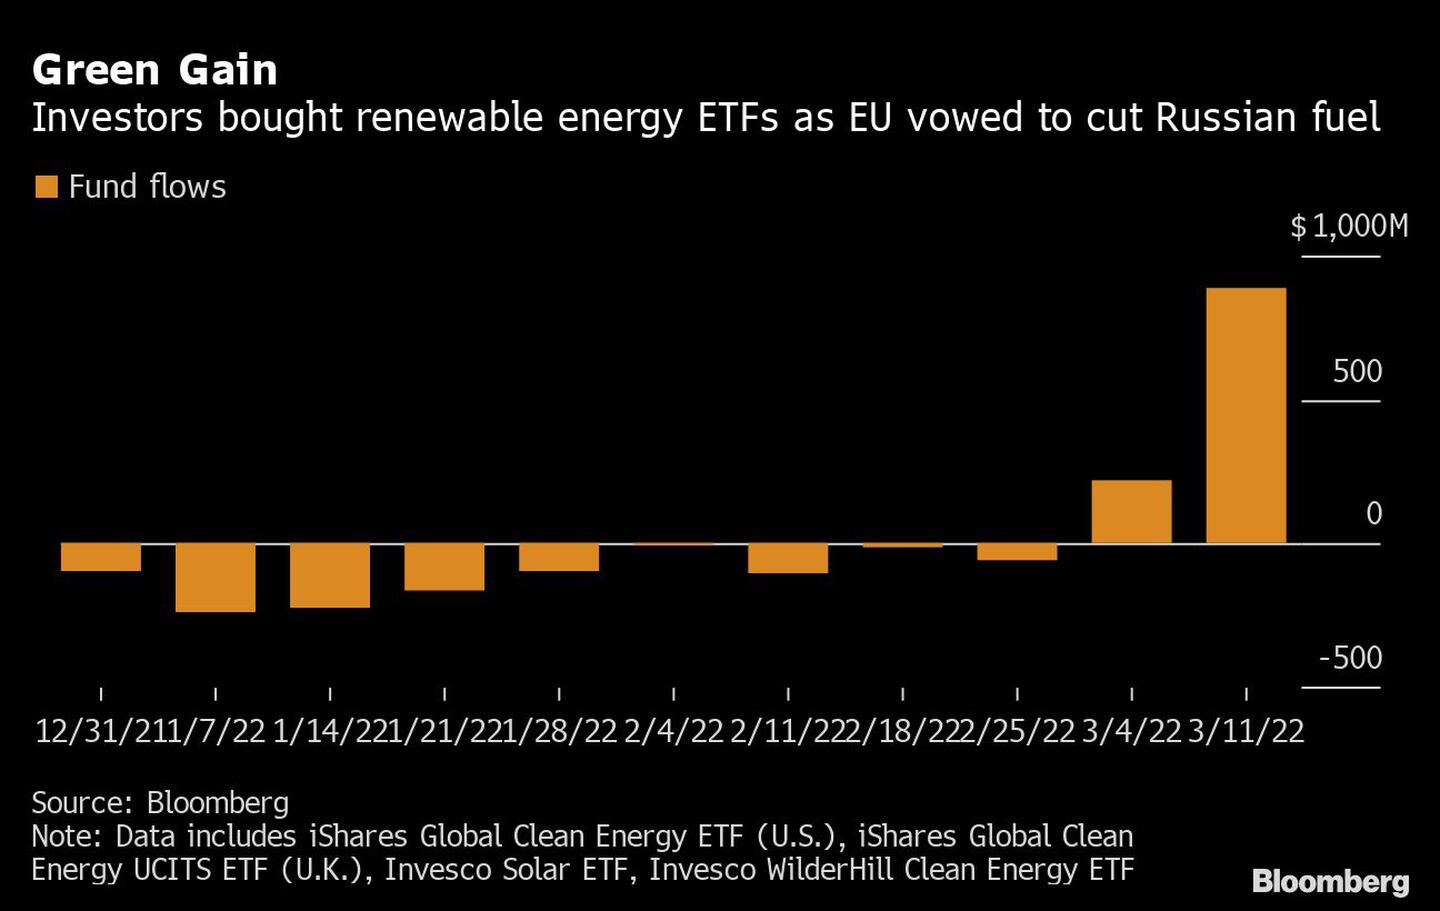 Ganancia verde
Los inversores compraron ETFs de energías renovables cuando la UE se comprometió a reducir el combustible ruso 
Naranja: Flujos de fondosdfd